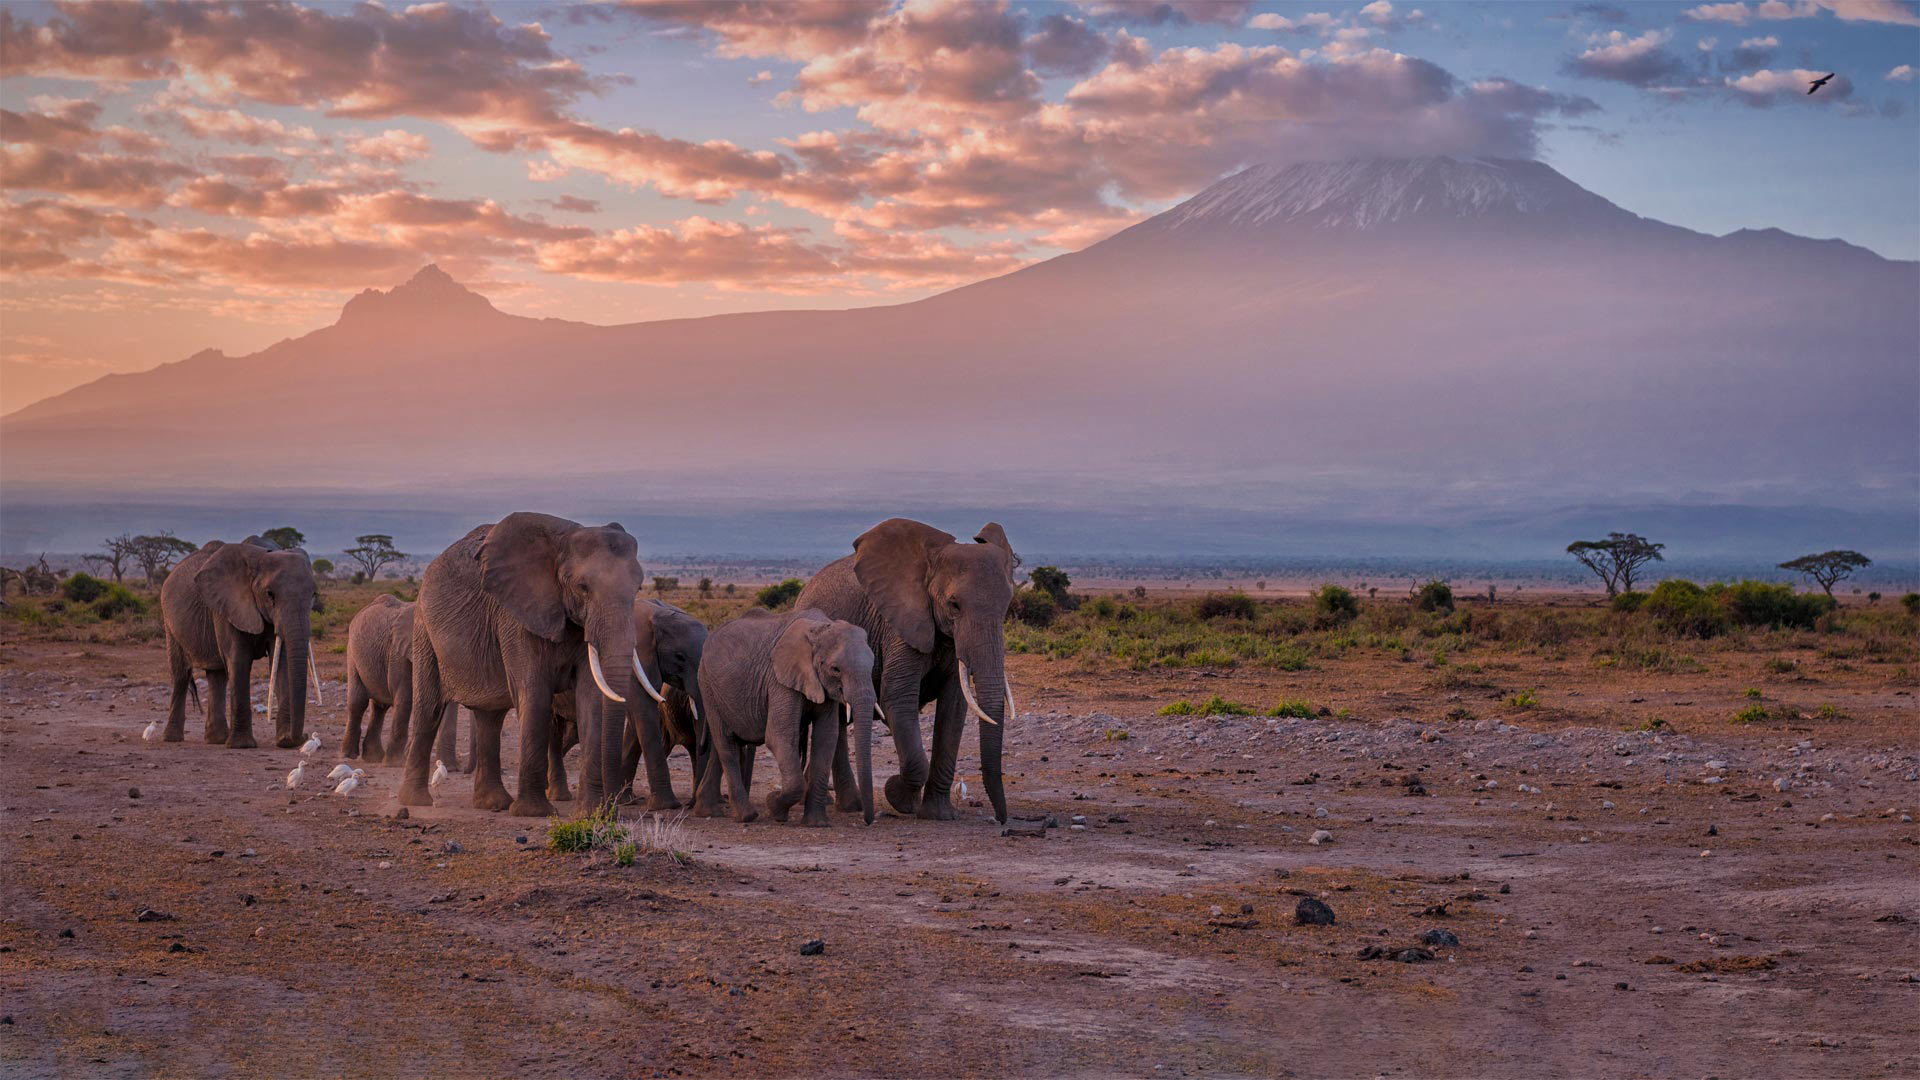 微软壁纸探索世界1204-乞力马扎罗山附近的大象（Elephants near Mount Kilimanjaro）